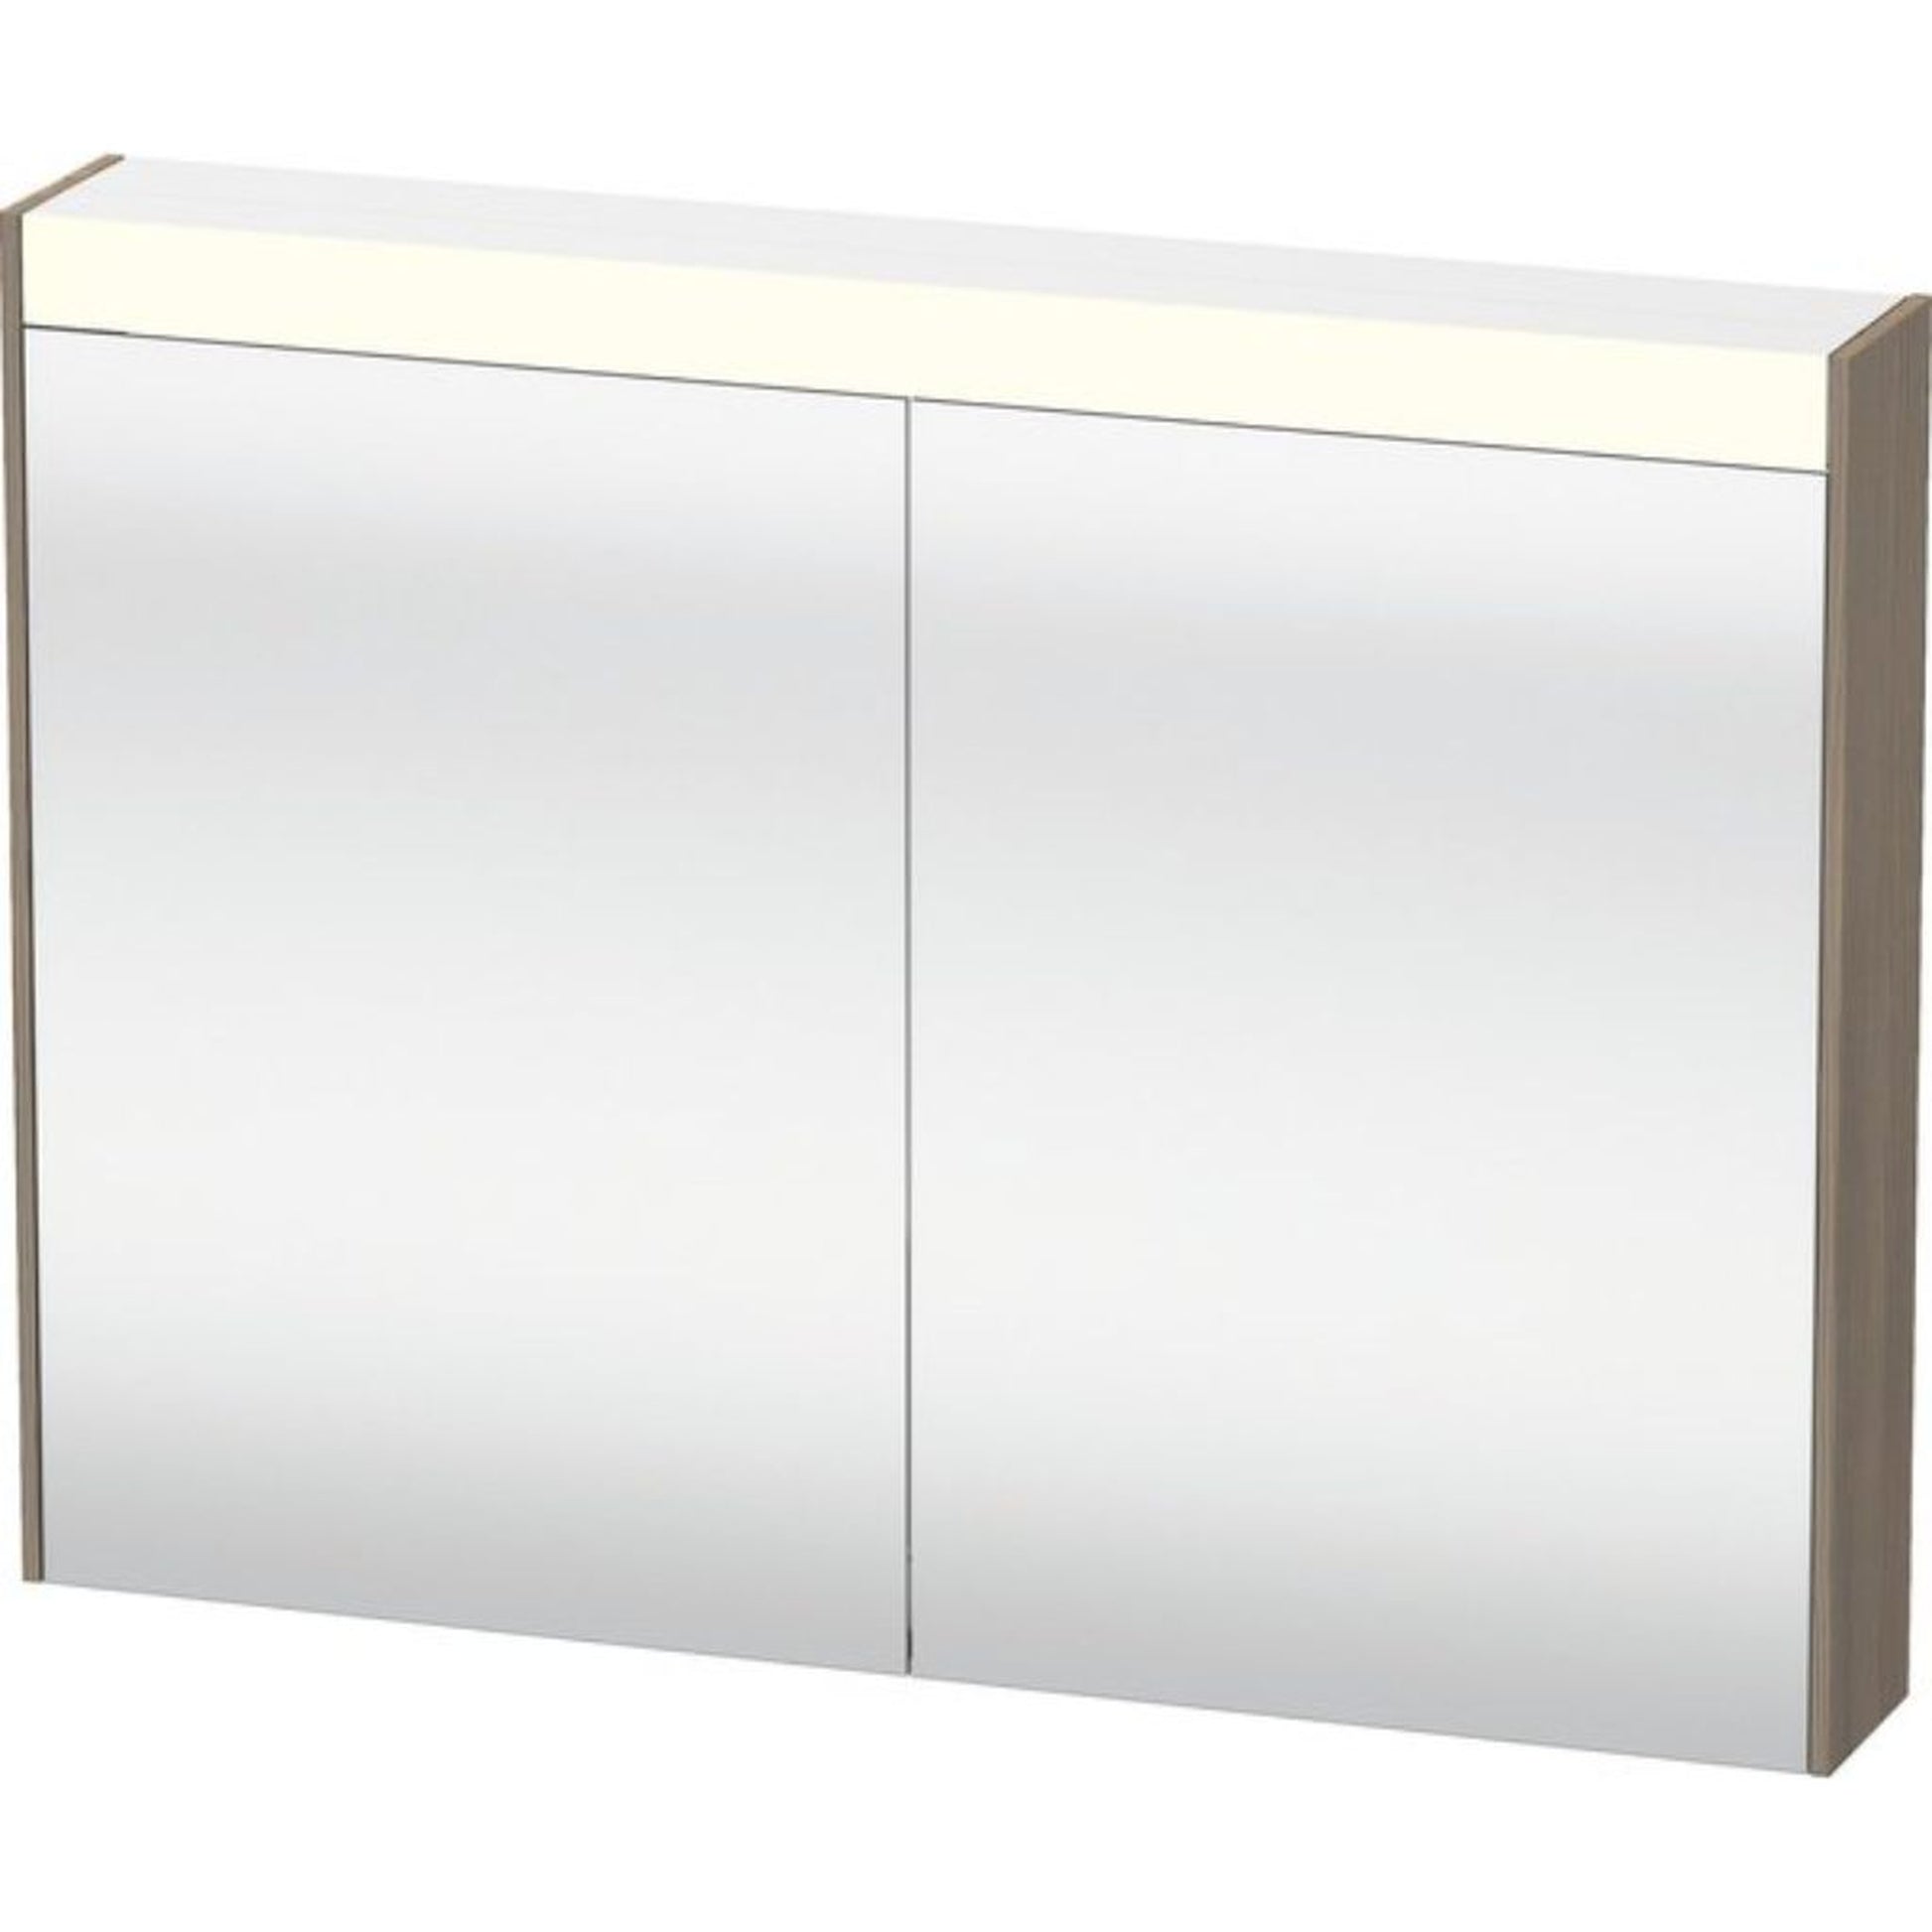 Duravit Brioso 32" x 30" x 6" Mirror Cabinet With Lighting Oak Terra